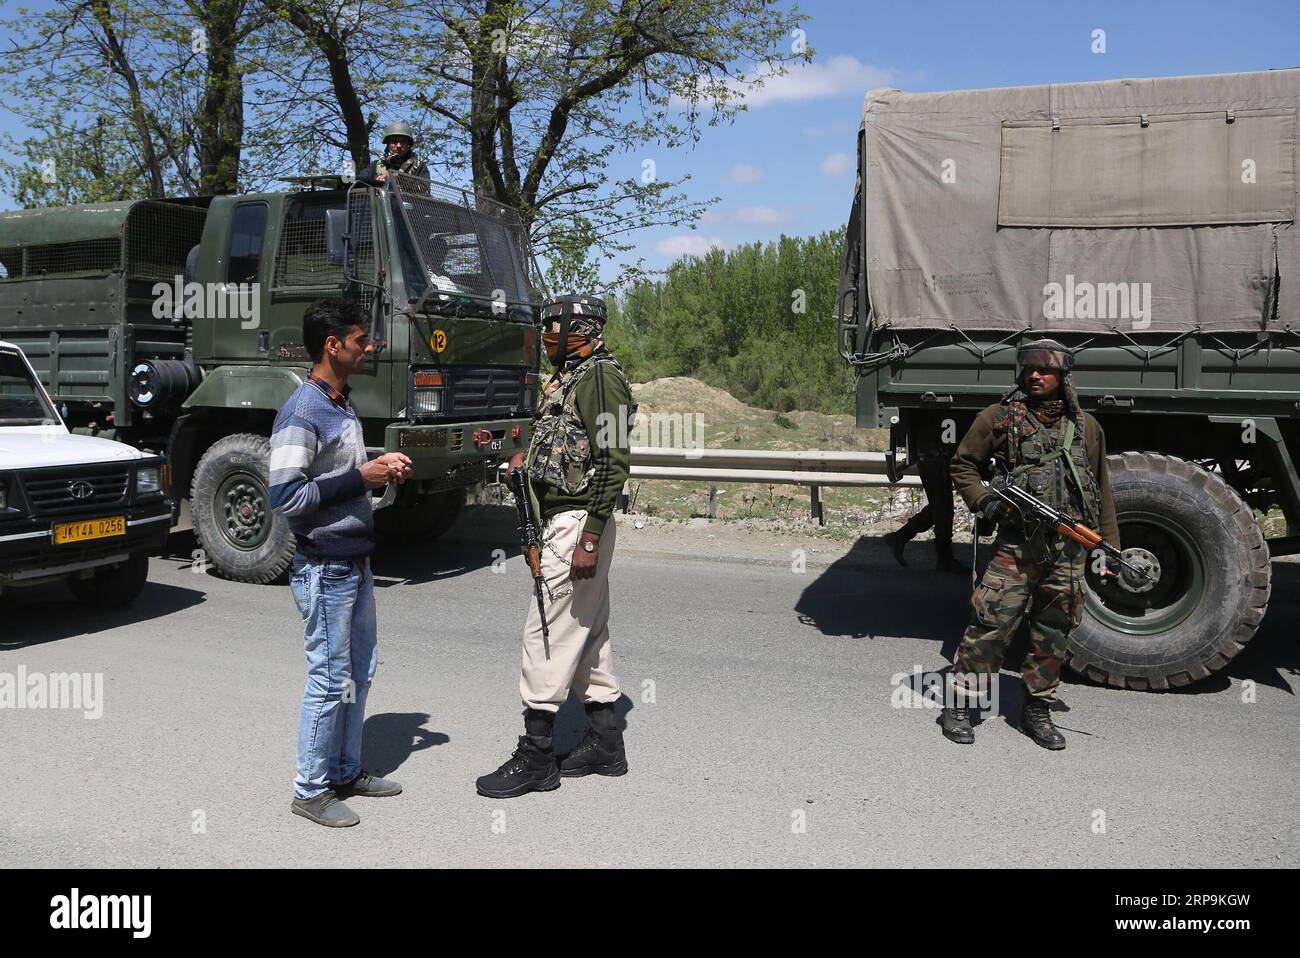 (190410) -- SRINAGAR, 10 avril 2019 (Xinhua) -- des troupes paramilitaires indiennes arrêtent la circulation civile pendant le confinement de sécurité sur la route dans la banlieue de la ville de Srinagar, capitale estivale du Cachemire contrôlé par l'Inde, 10 avril 2019. La circulation civile n'est pas autorisée sur l'autoroute dans le Cachemire contrôlé par l'Inde pendant deux jours par semaine (dimanche et mercredi) pendant les prochaines élections générales indiennes, ont déclaré les responsables. (Xinhua/Javed Dar) CACHEMIRE-SRINAGAR-CONFINEMENT DE SÉCURITÉ SUR LA ROUTE PUBLICATIONxNOTxINxCHN Banque D'Images